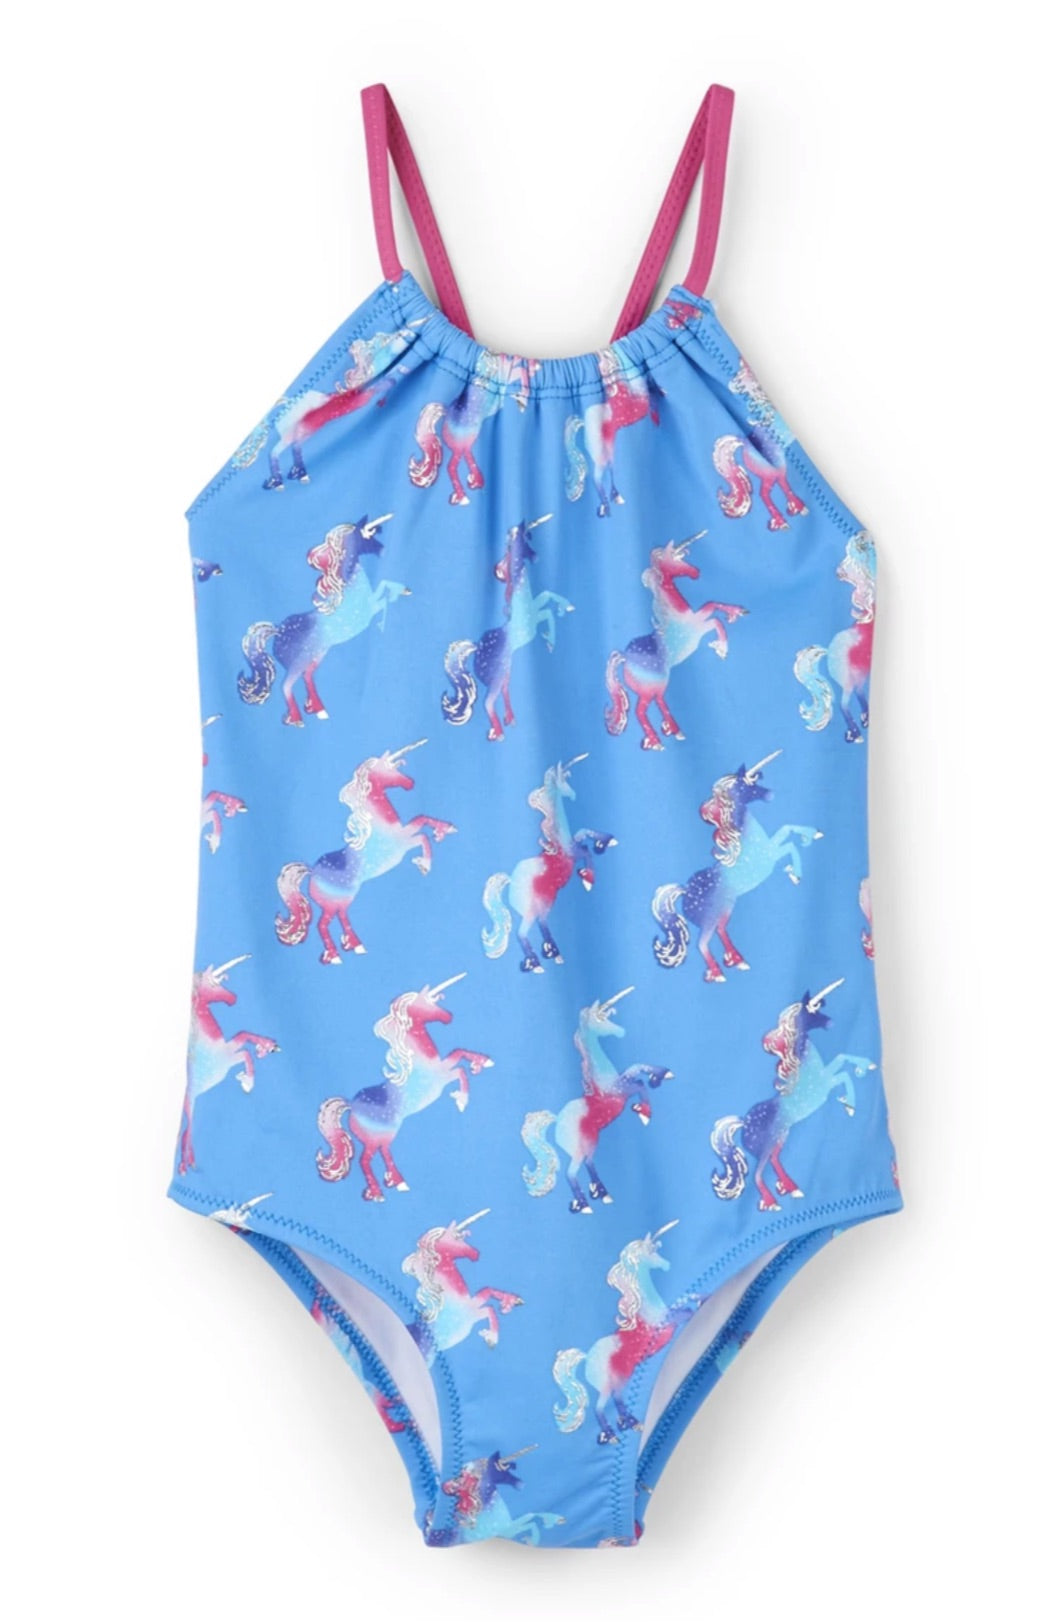 Rainbow unicorns swimsuit